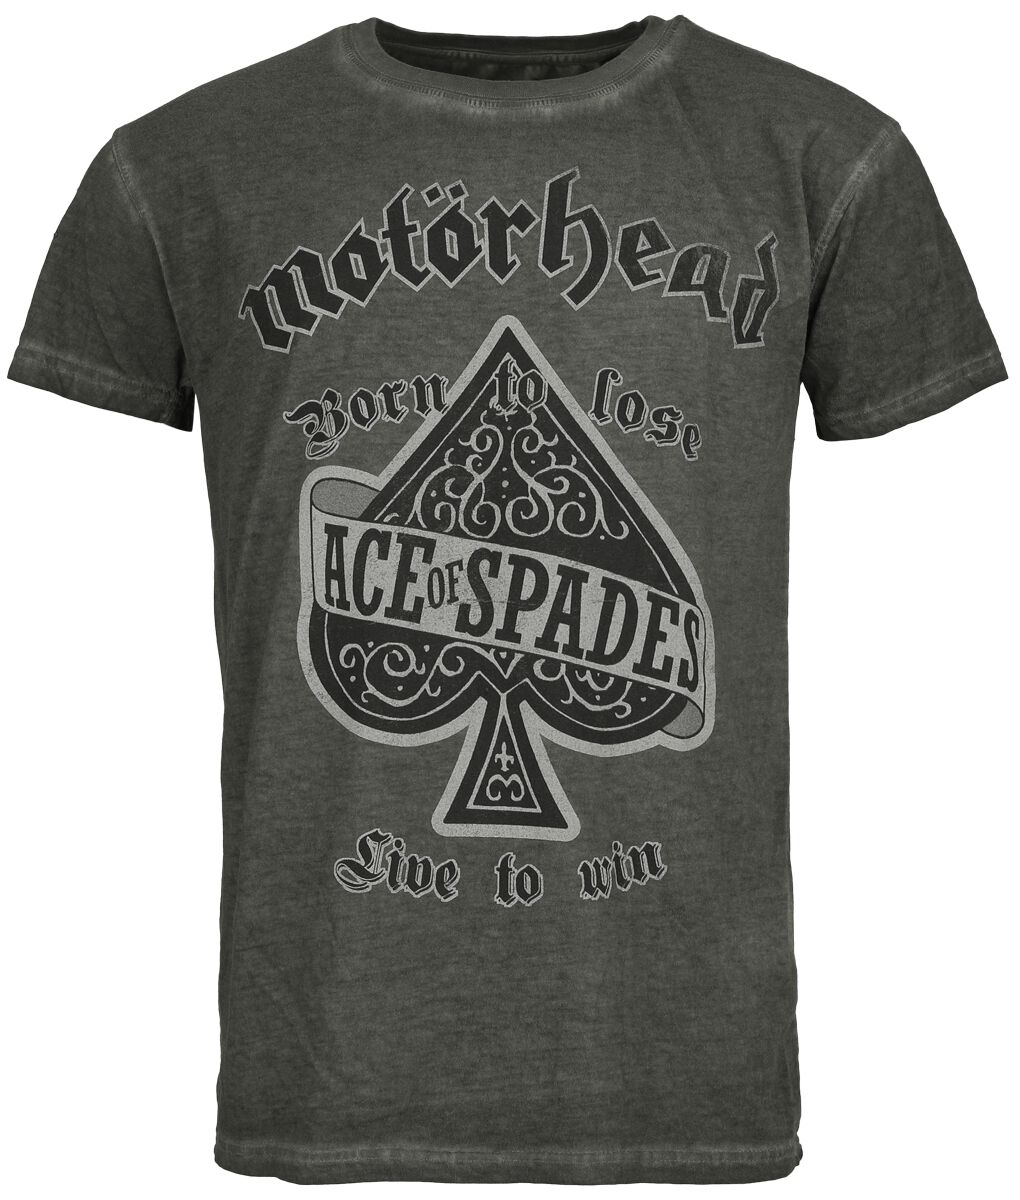 Motörhead T-Shirt - Ace Of Spades - S bis 4XL - für Männer - Größe L - anthrazit  - Lizenziertes Merchandise!